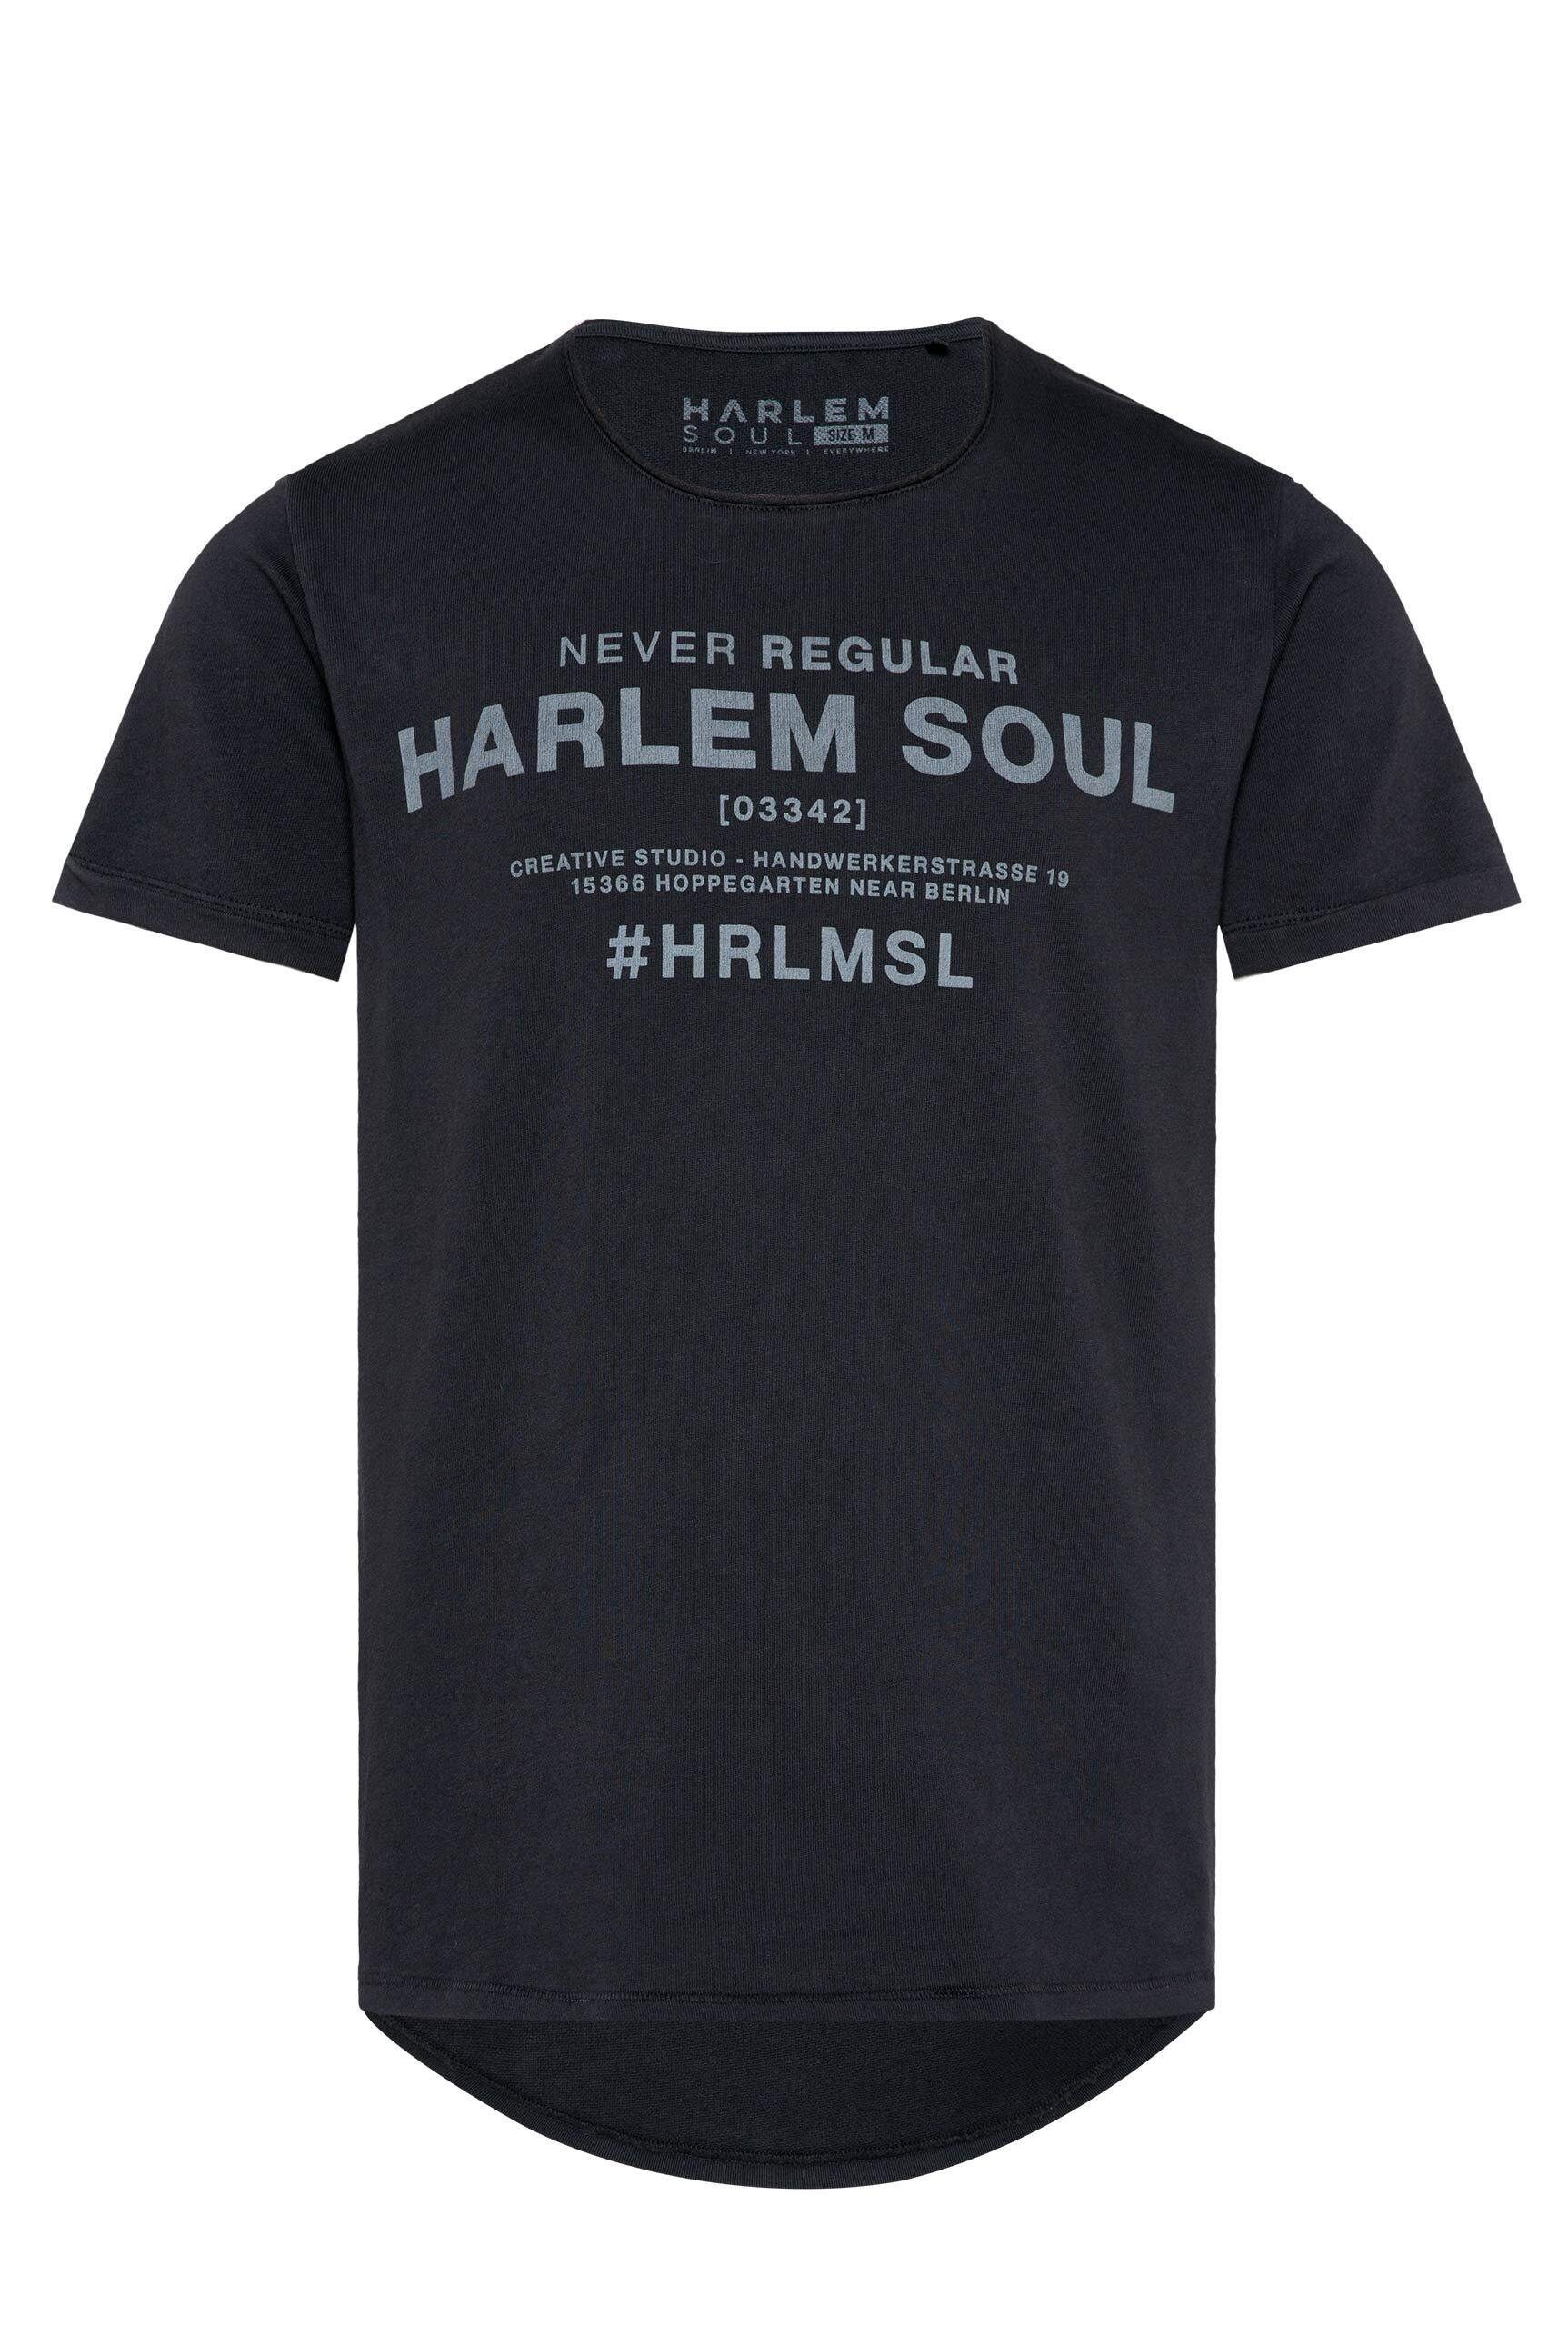 Harlem Rundhalsshirt Soul Turn-up-Ärmeln mit fixierten